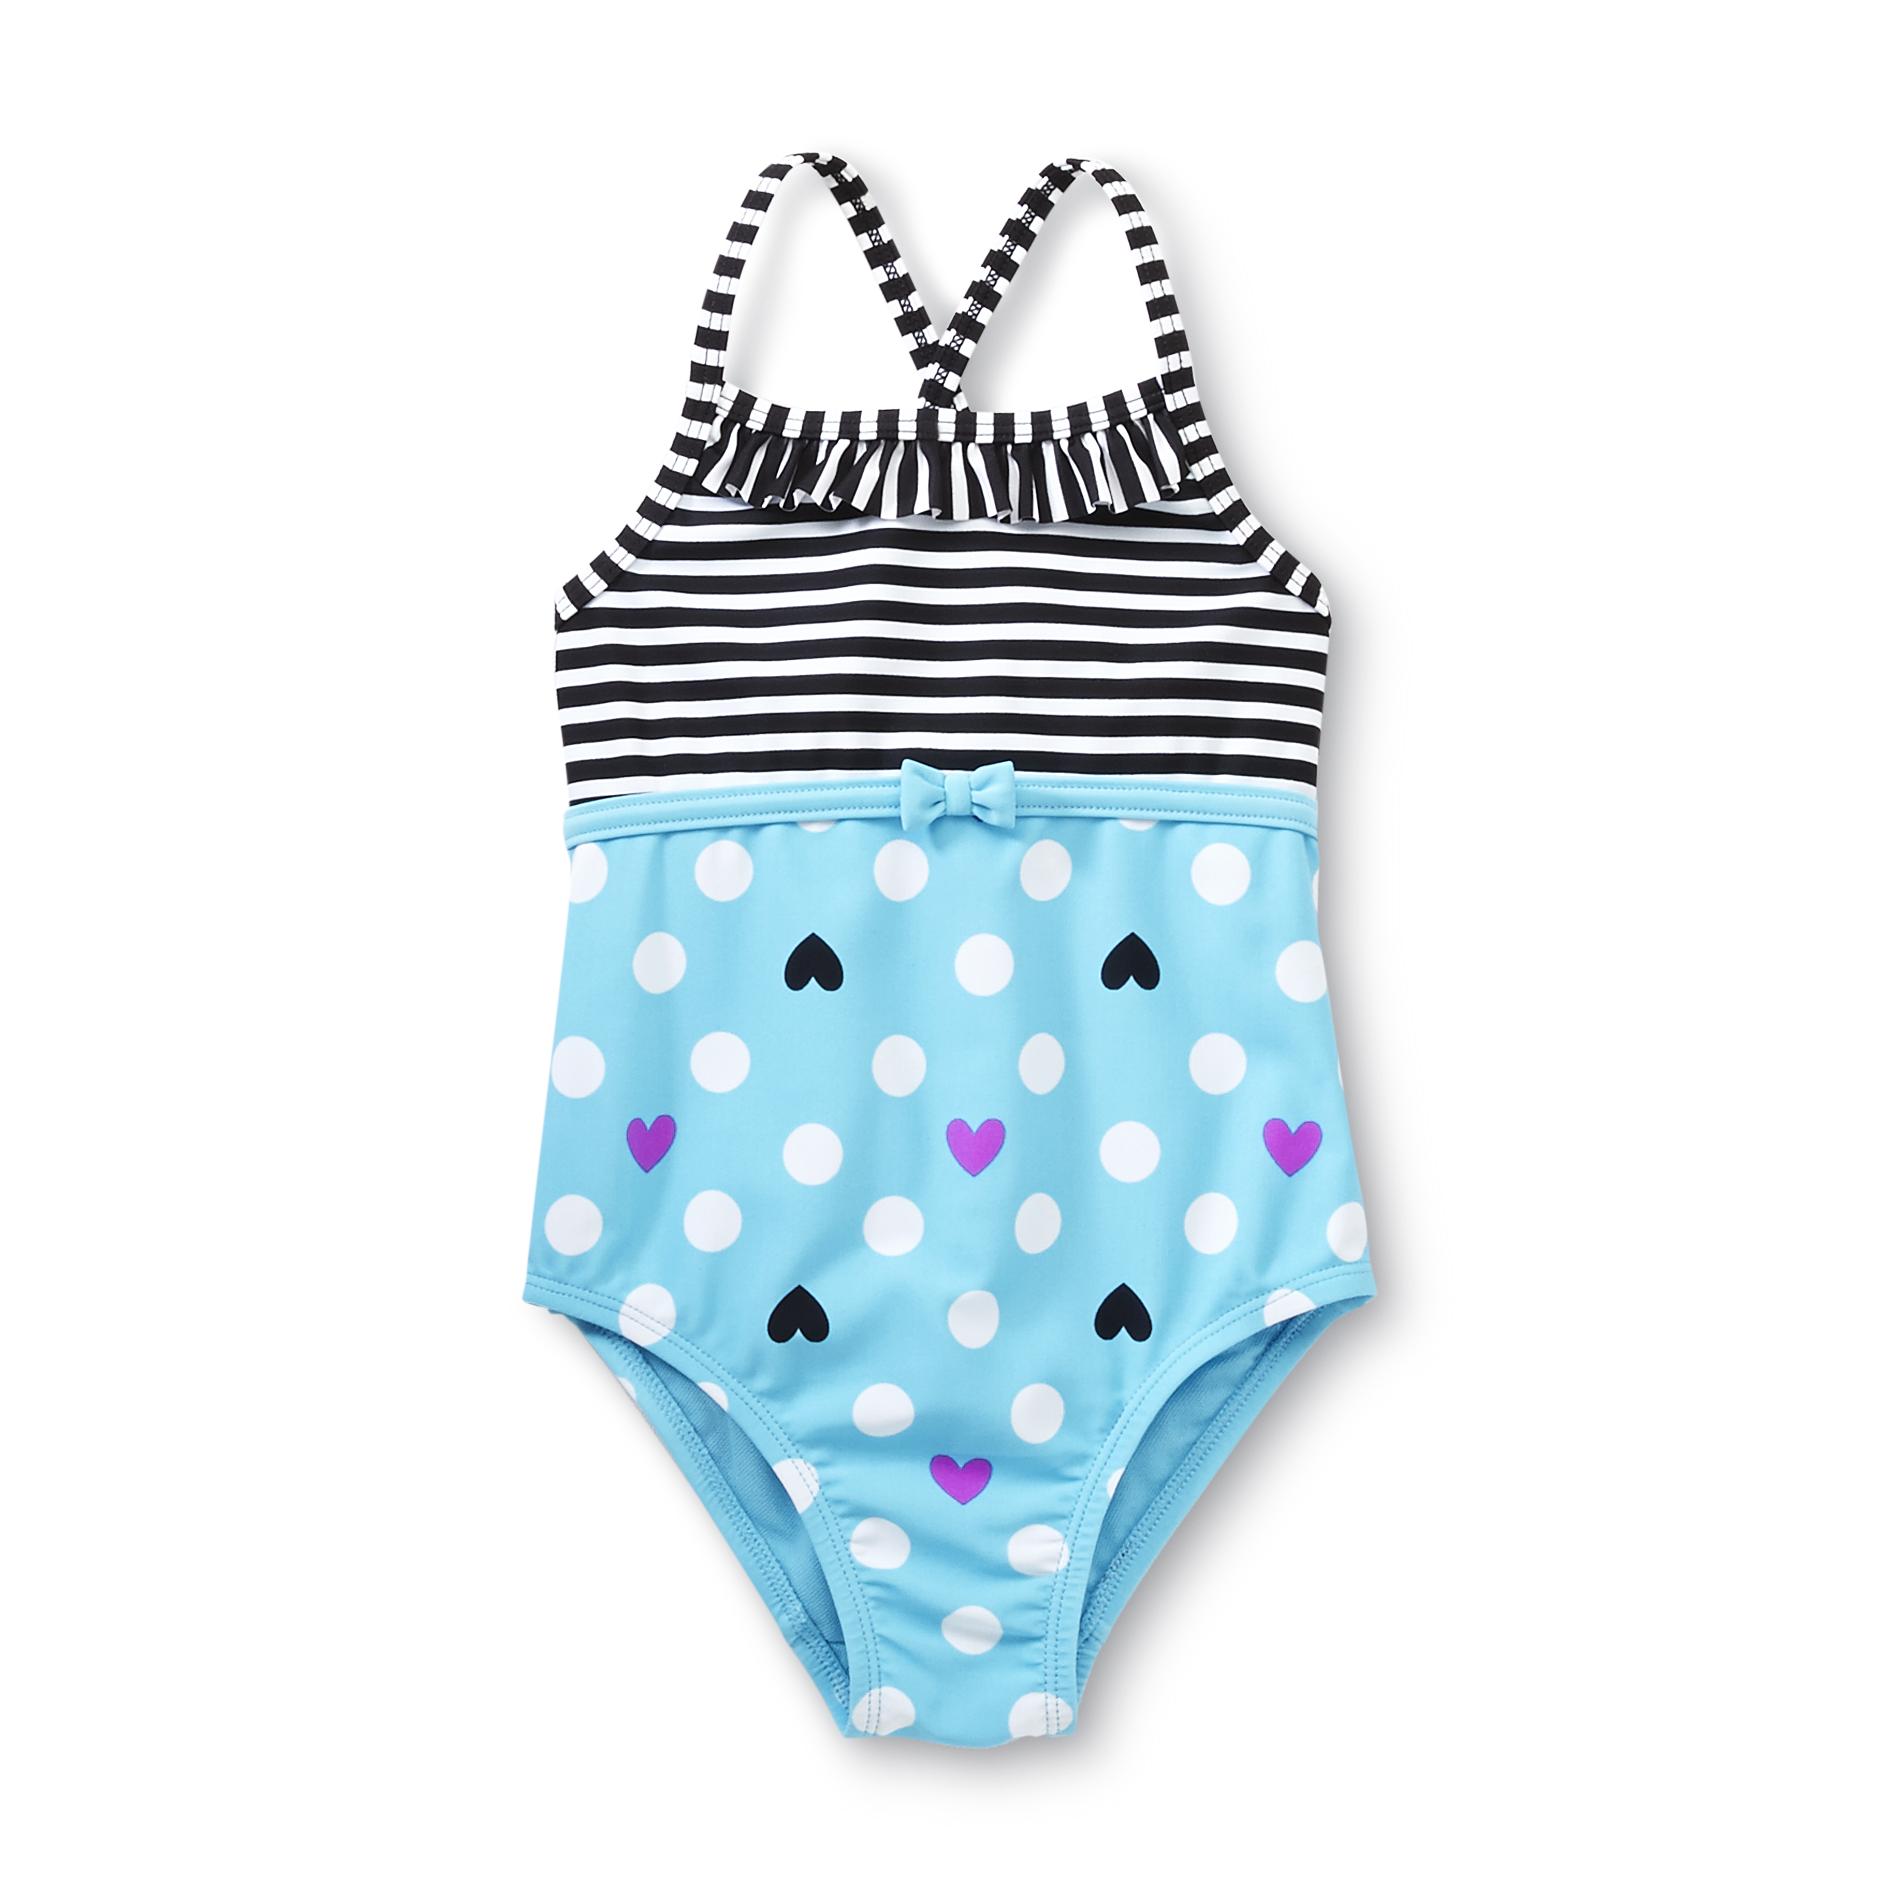 Joe Boxer Toddler Girl's Swimsuit - Stripes & Hearts